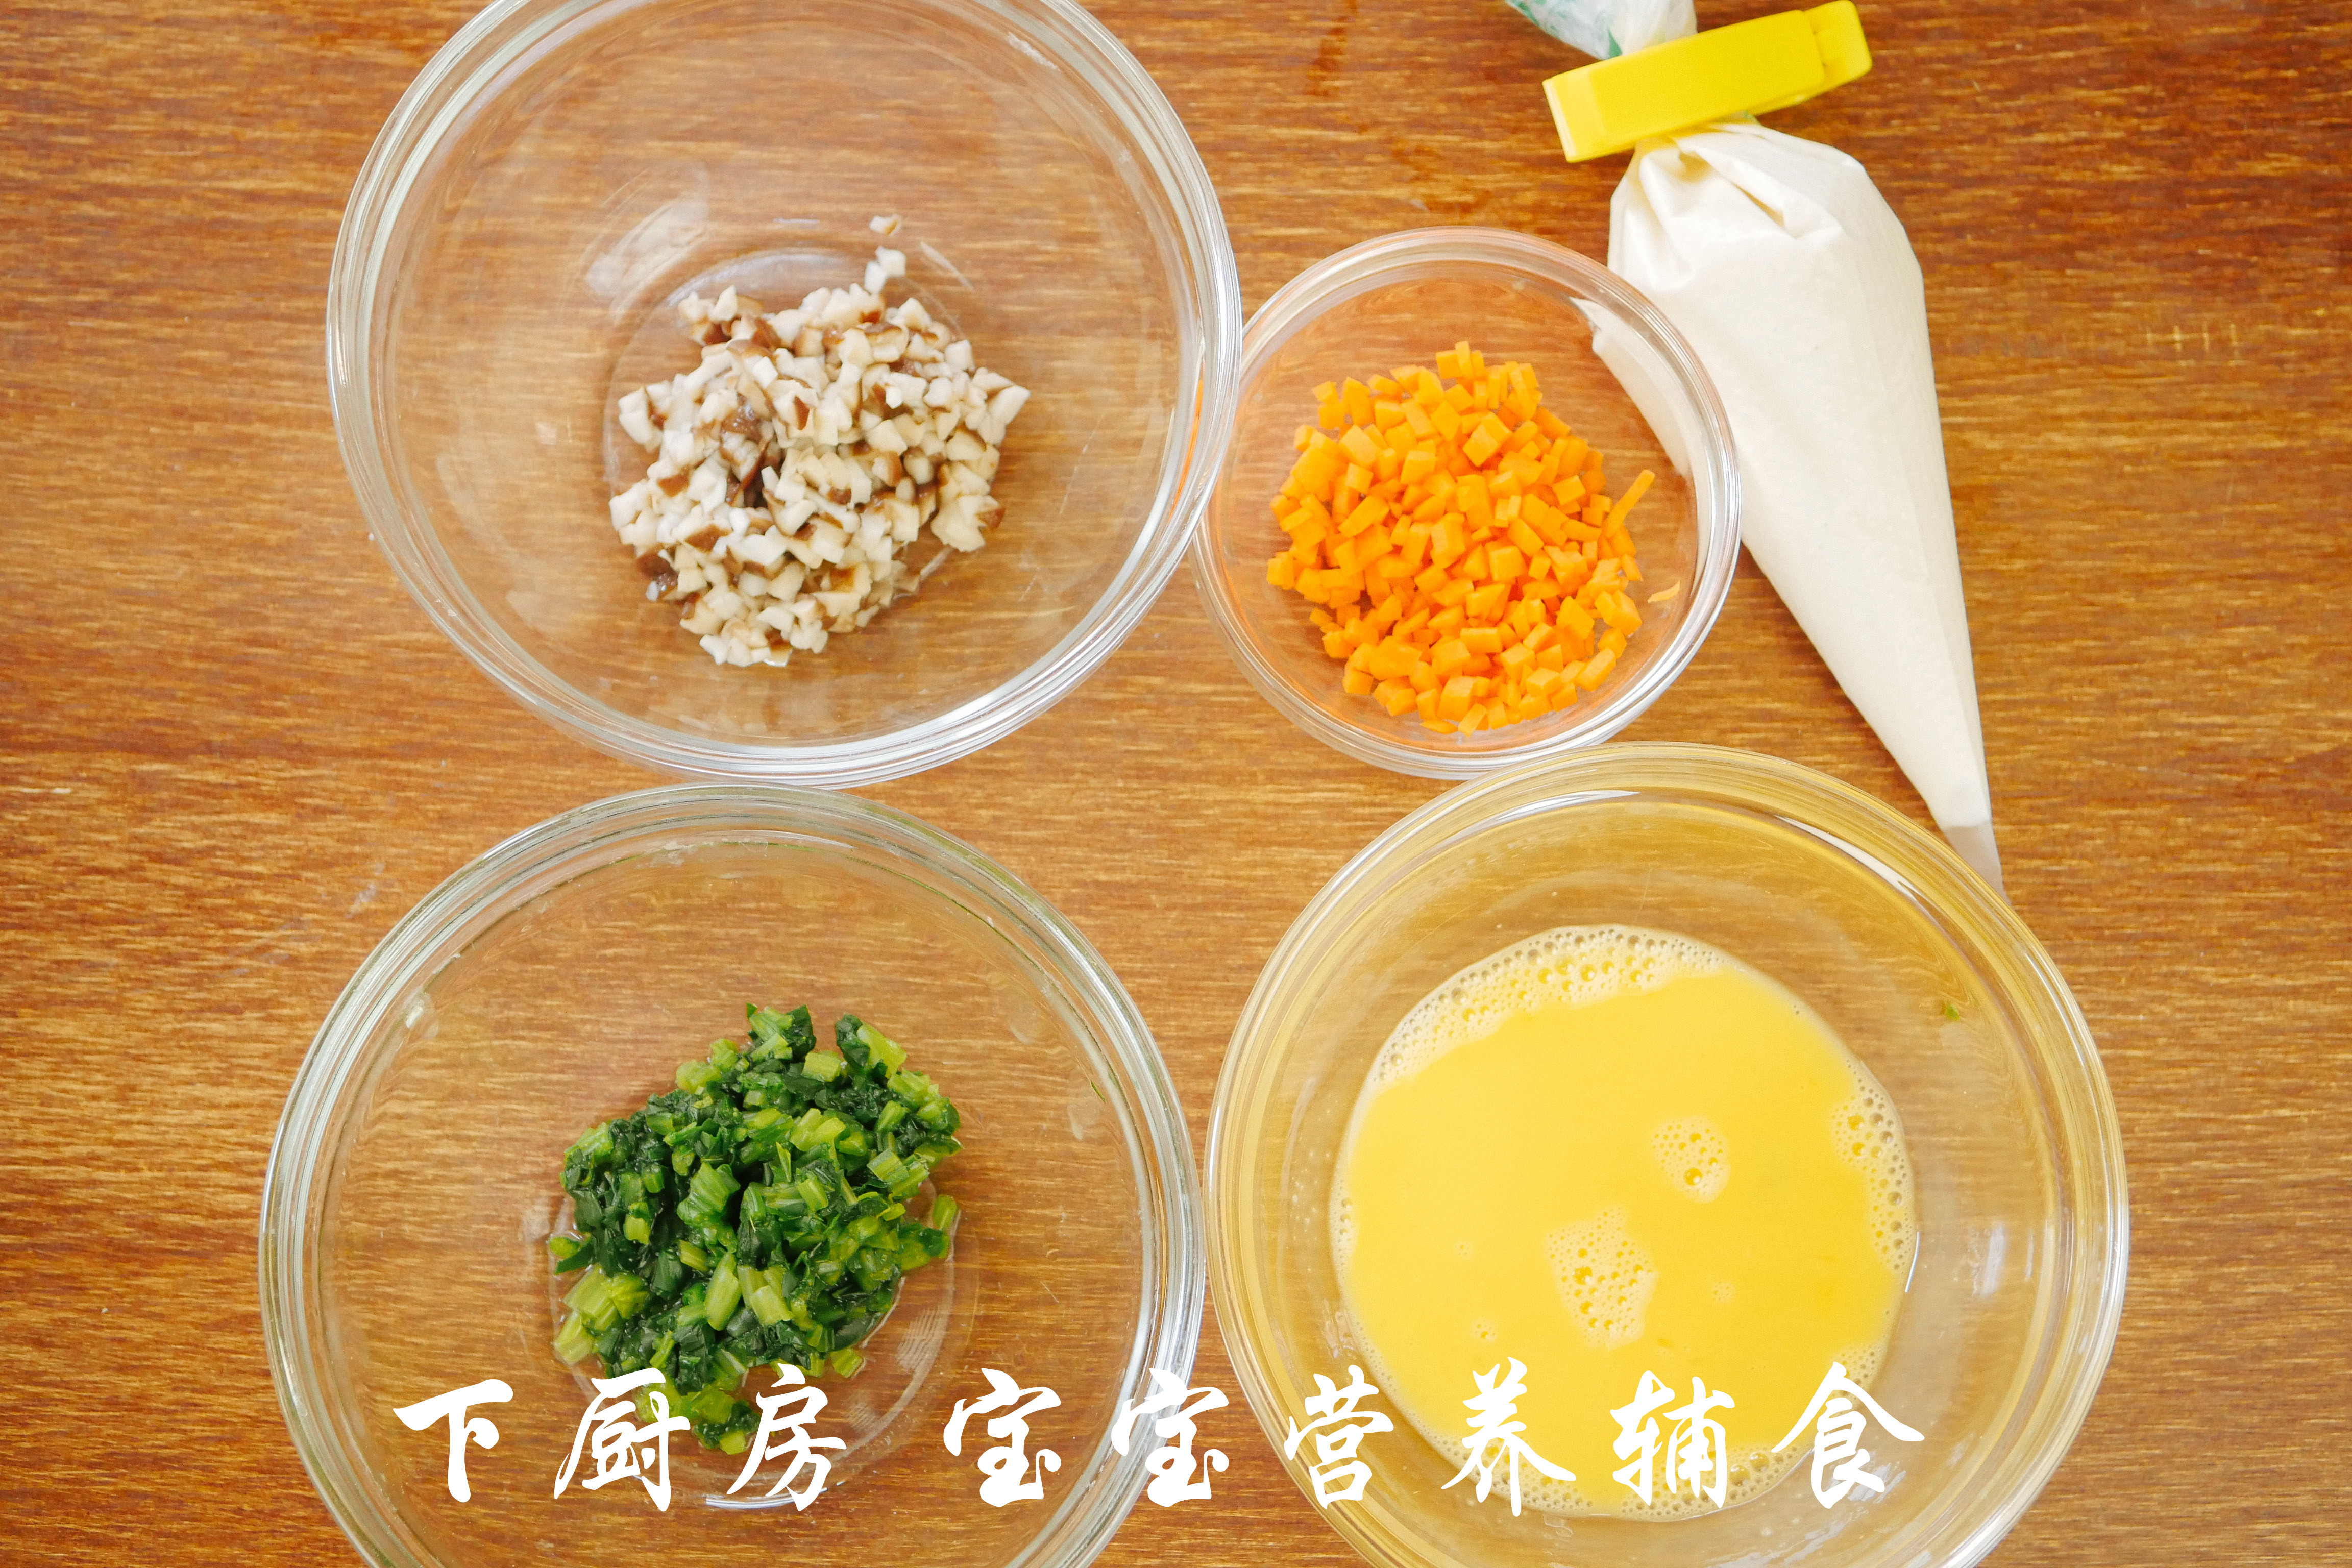 翡翠香菇疙瘩汤